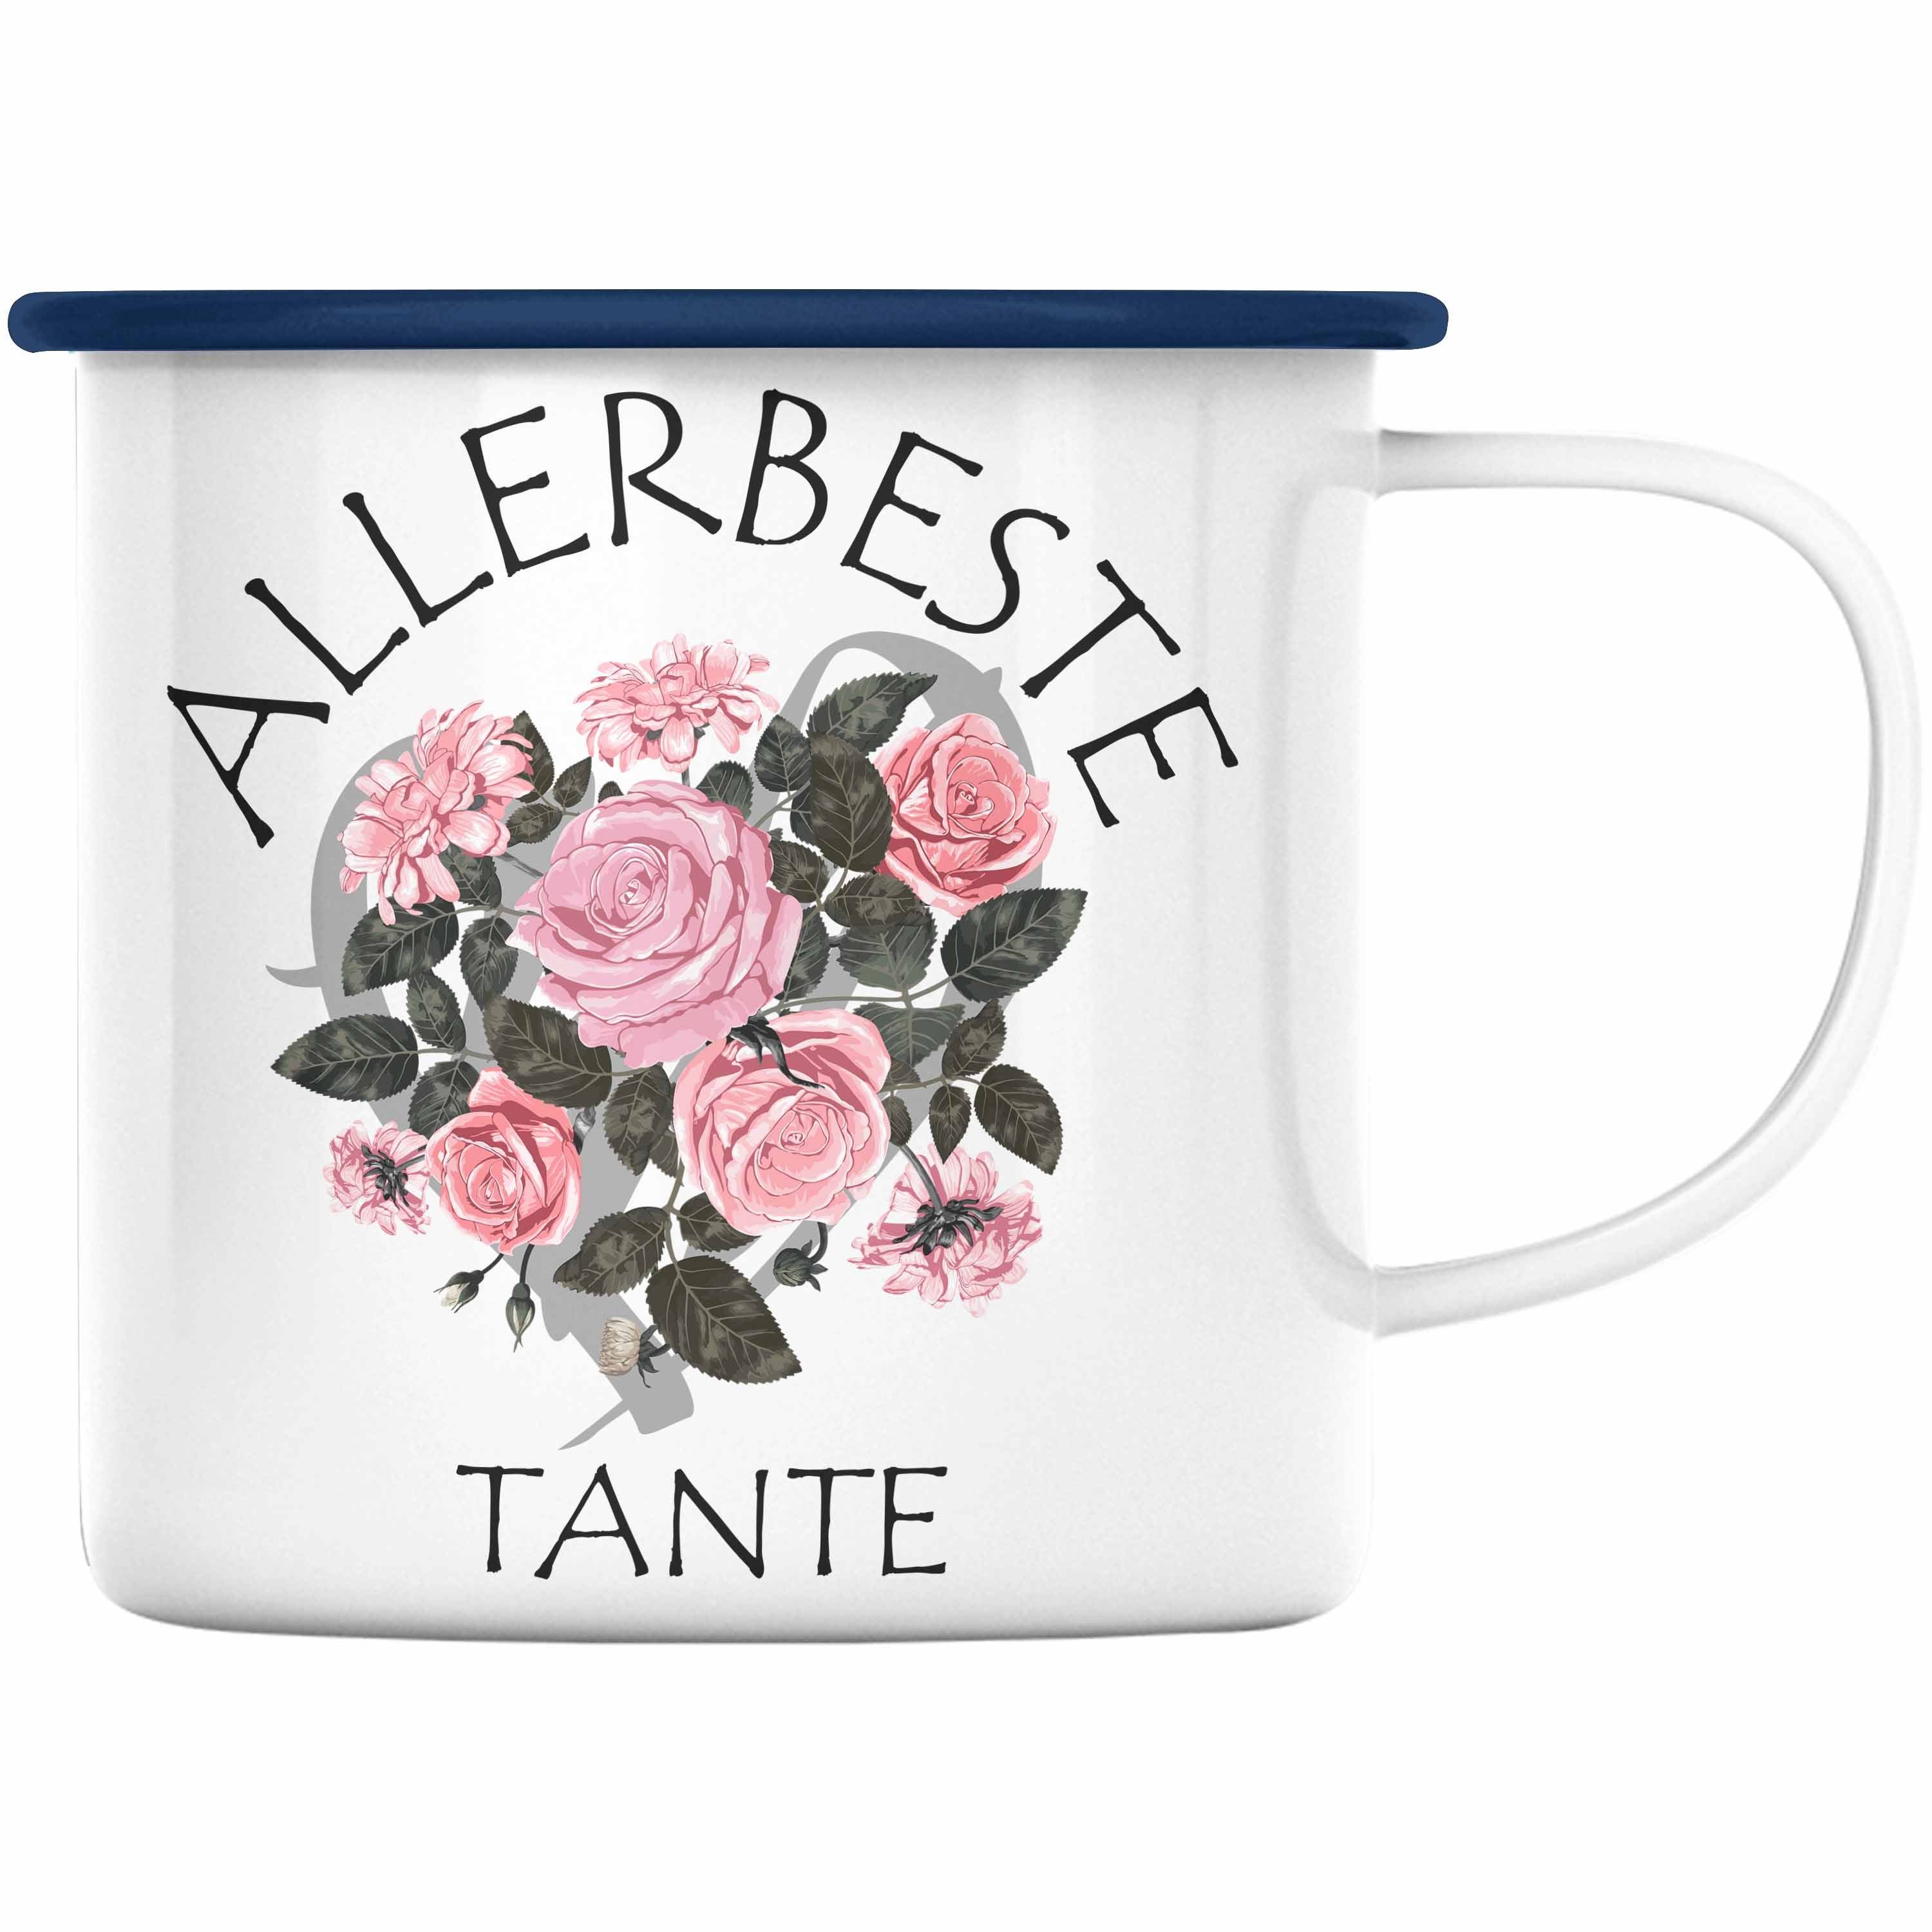 Trendation Thermotasse Trendation - Beste Tante Emaille Tasse Geschenk KaffeeEmaille Tasse für Beste Tante der Welt Geschenkidee Geburtstag Blau